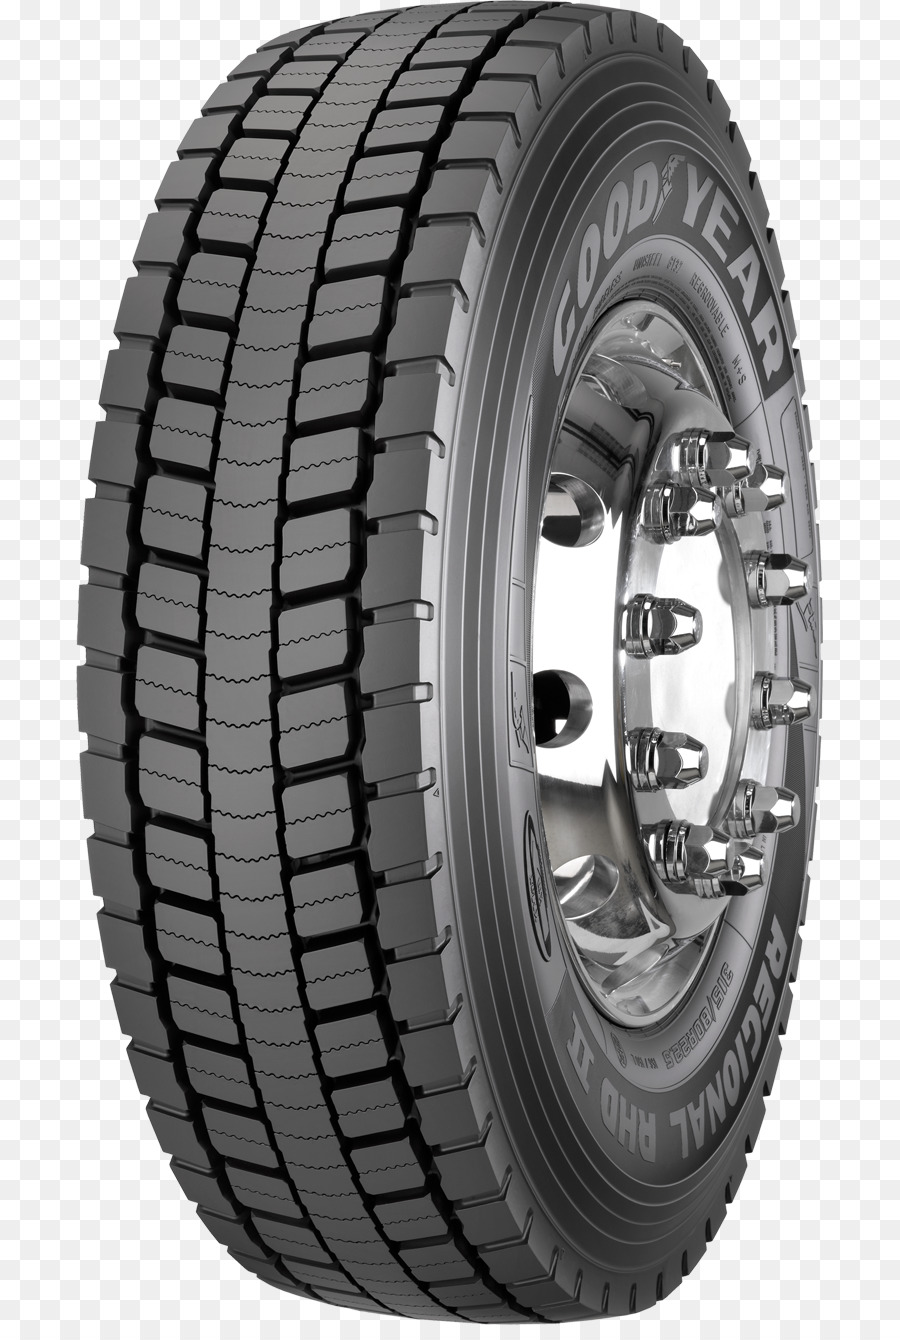 Goodyear Tire und Rubber Company Tread Car Truck - Auto